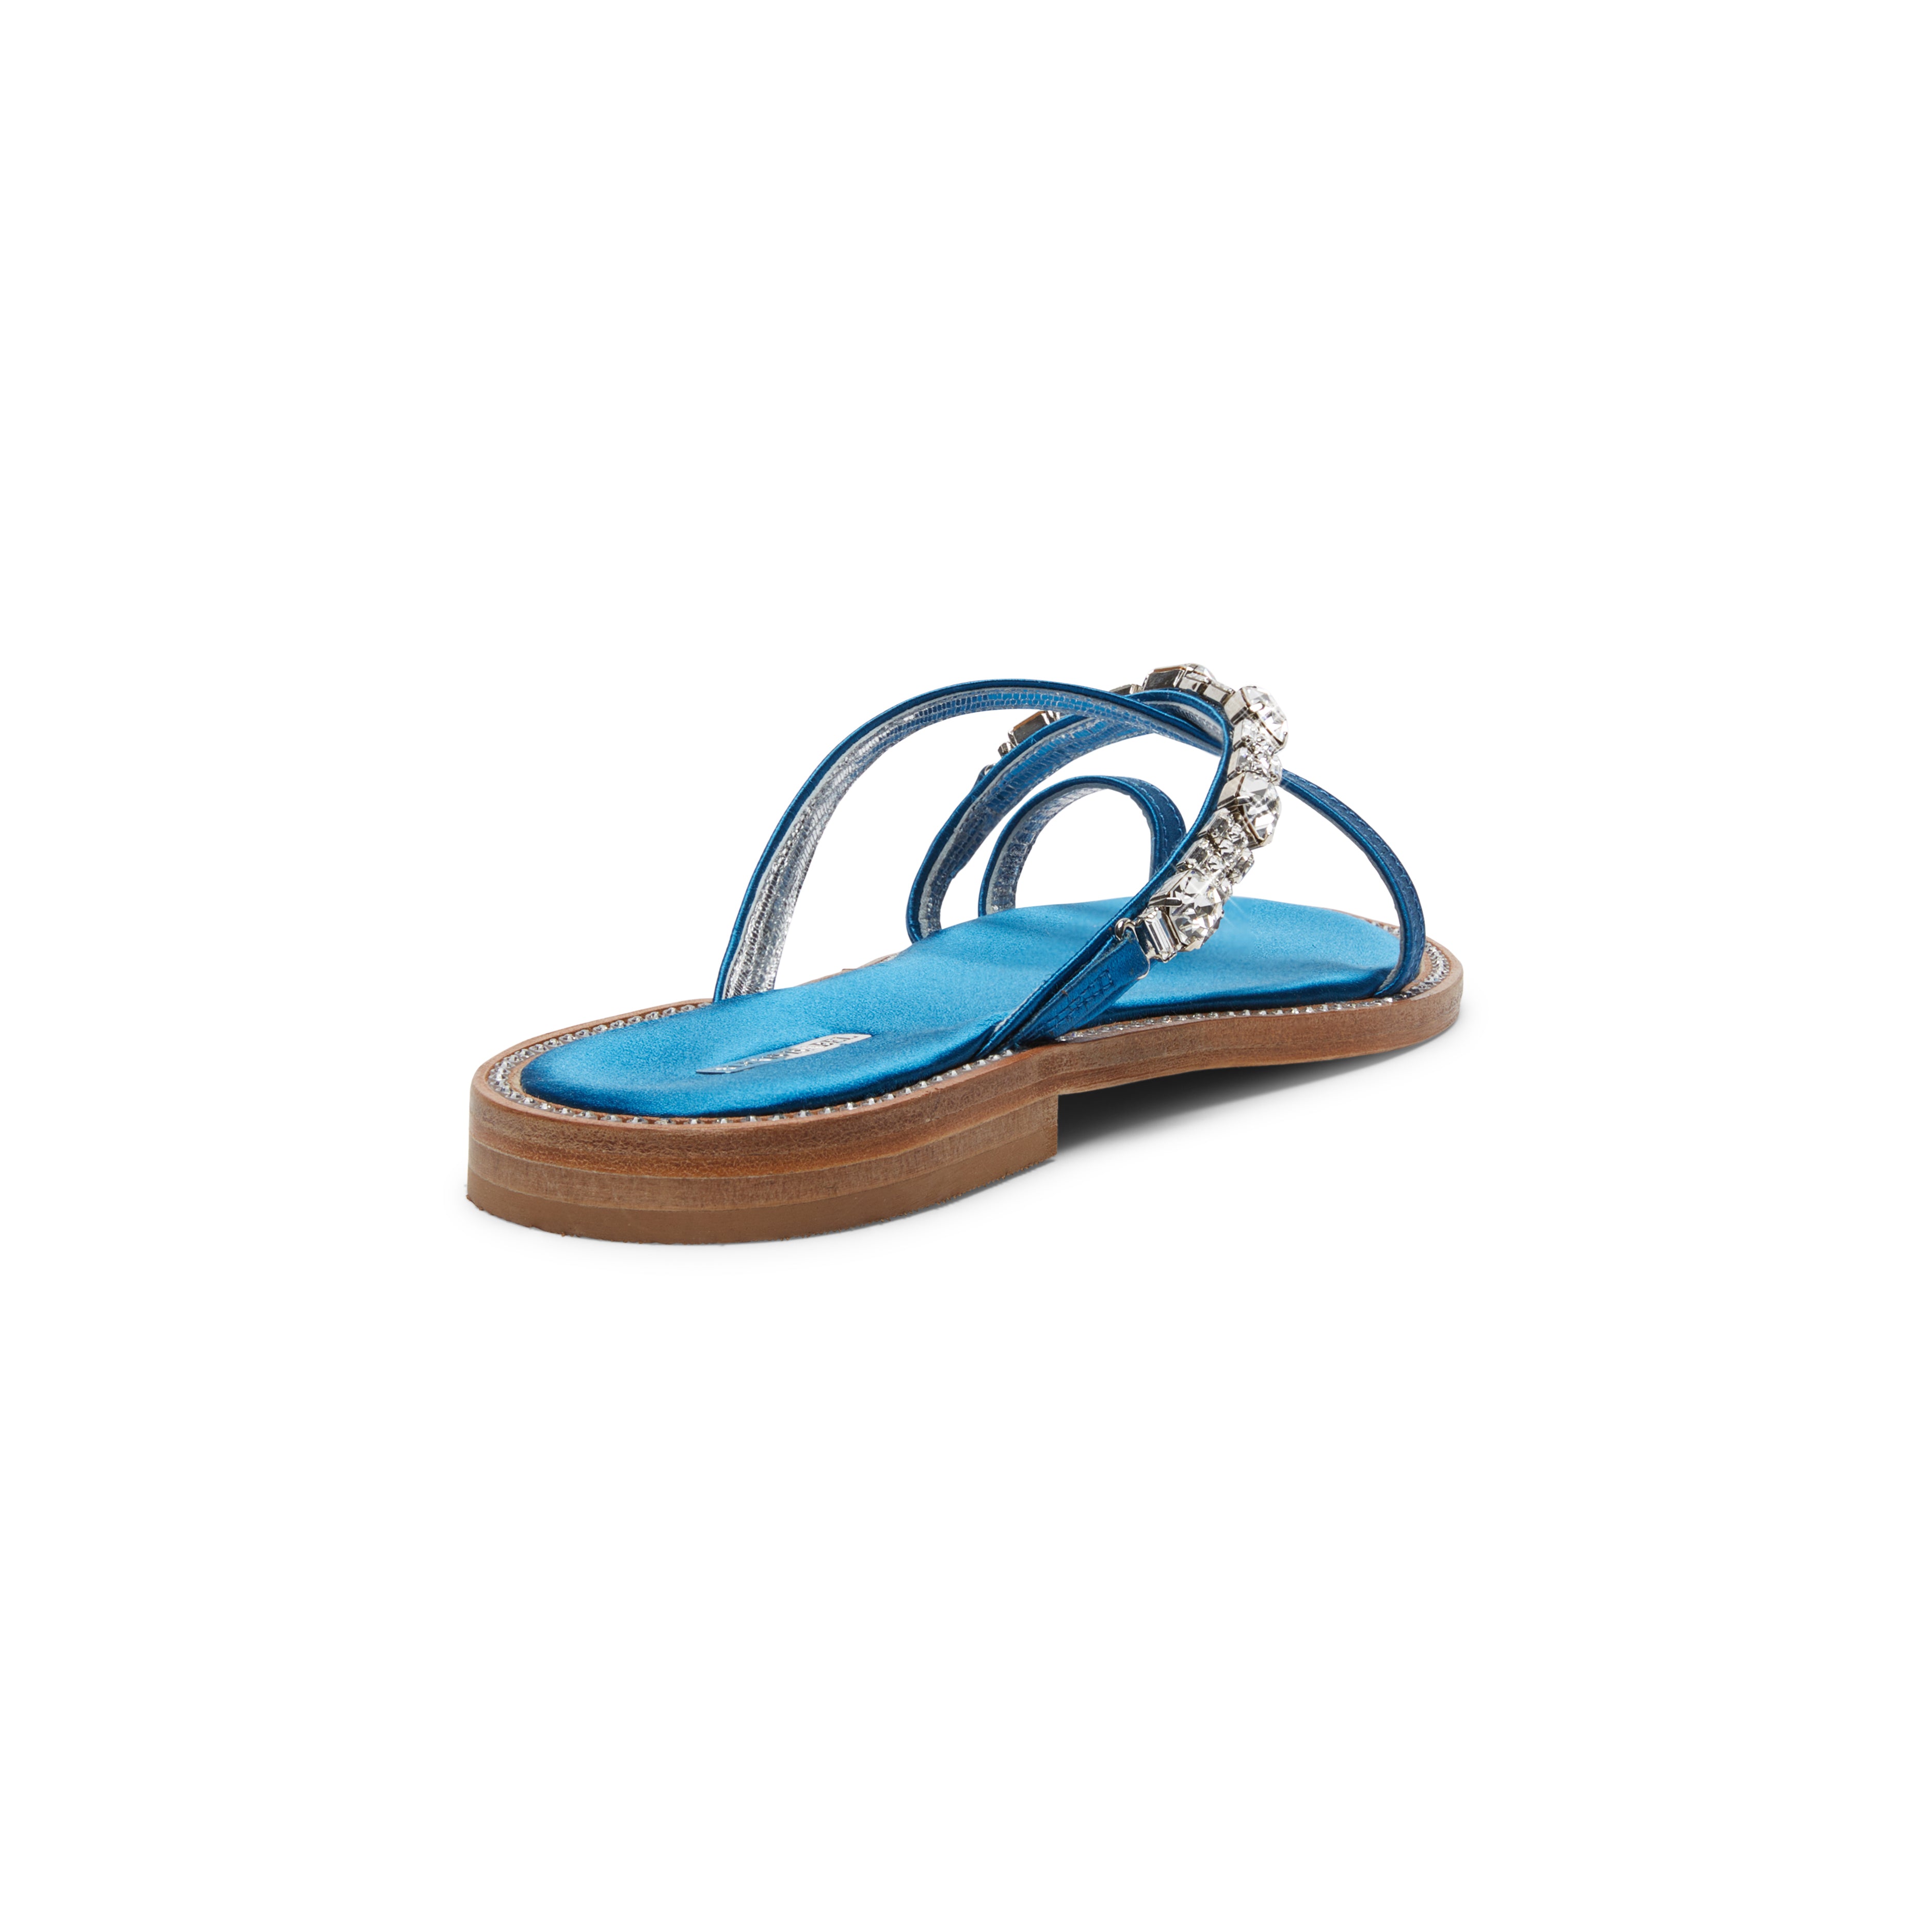 Jeweled Satin Sandals - Indigo Blue Shoes: Alma | Alexis Isabel ...